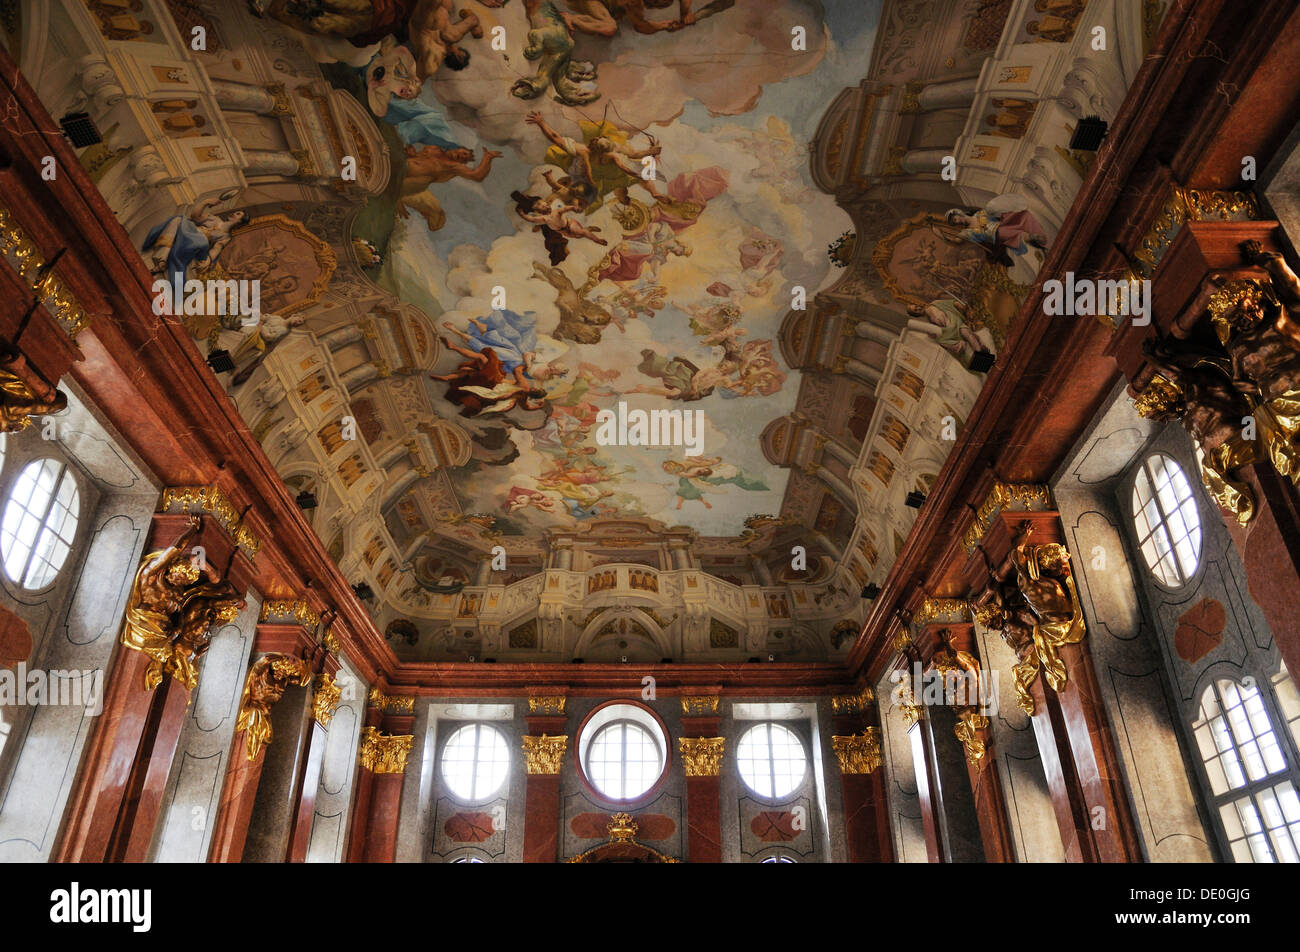 La peinture du plafond dans le hall en marbre, Abbaye de Melk ou Stift Melk, UNESCO World Heritage Site, Basse Autriche, Autriche, Europe Banque D'Images